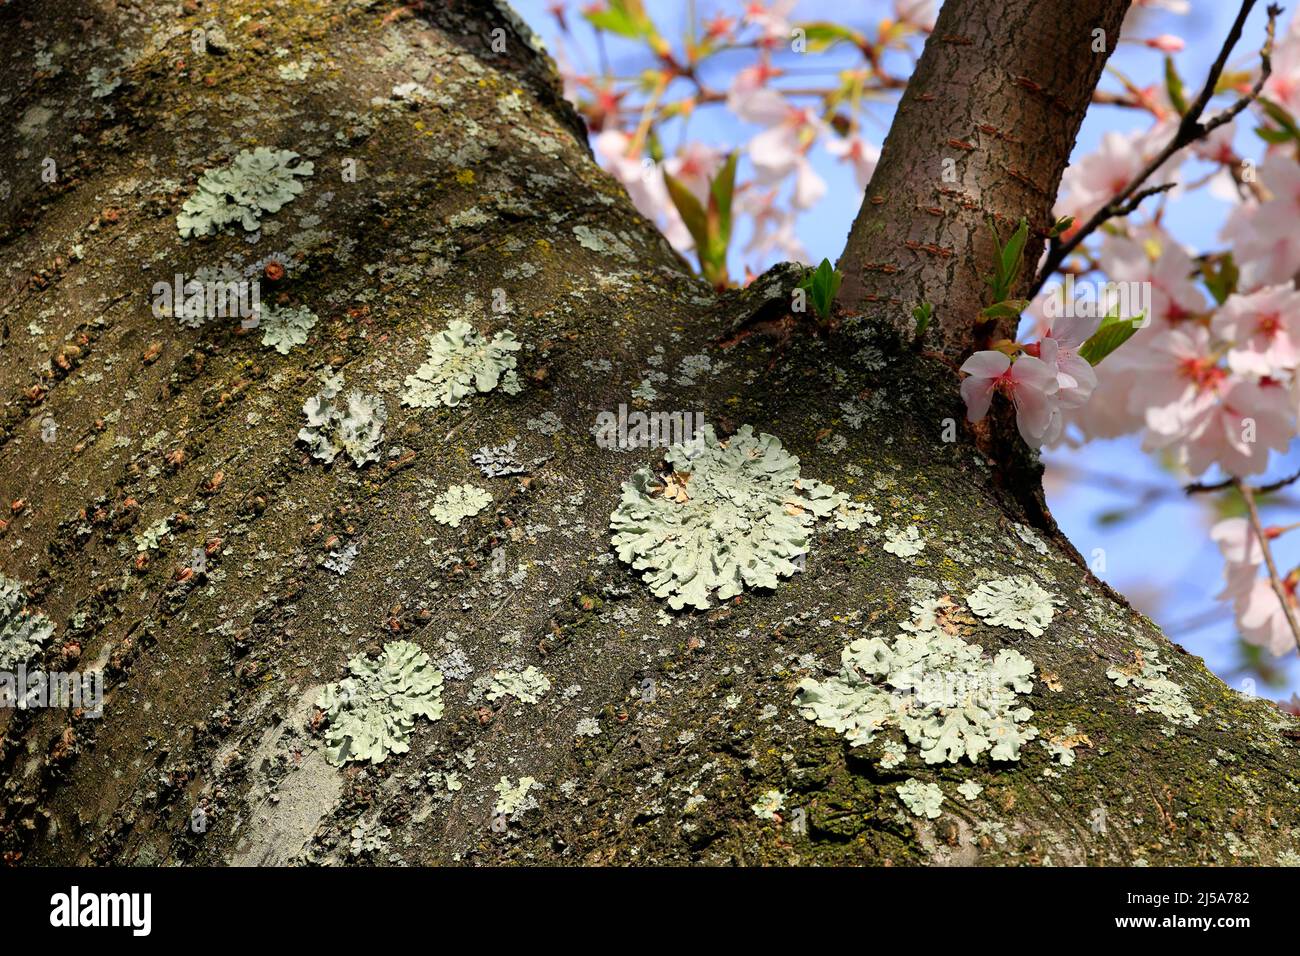 Grünschildflechten, Flavoparmelia caperata, foliöse Flechten, die auf der Rinde eines Kirschbaums in voller Blüte wachsen. Stockfoto